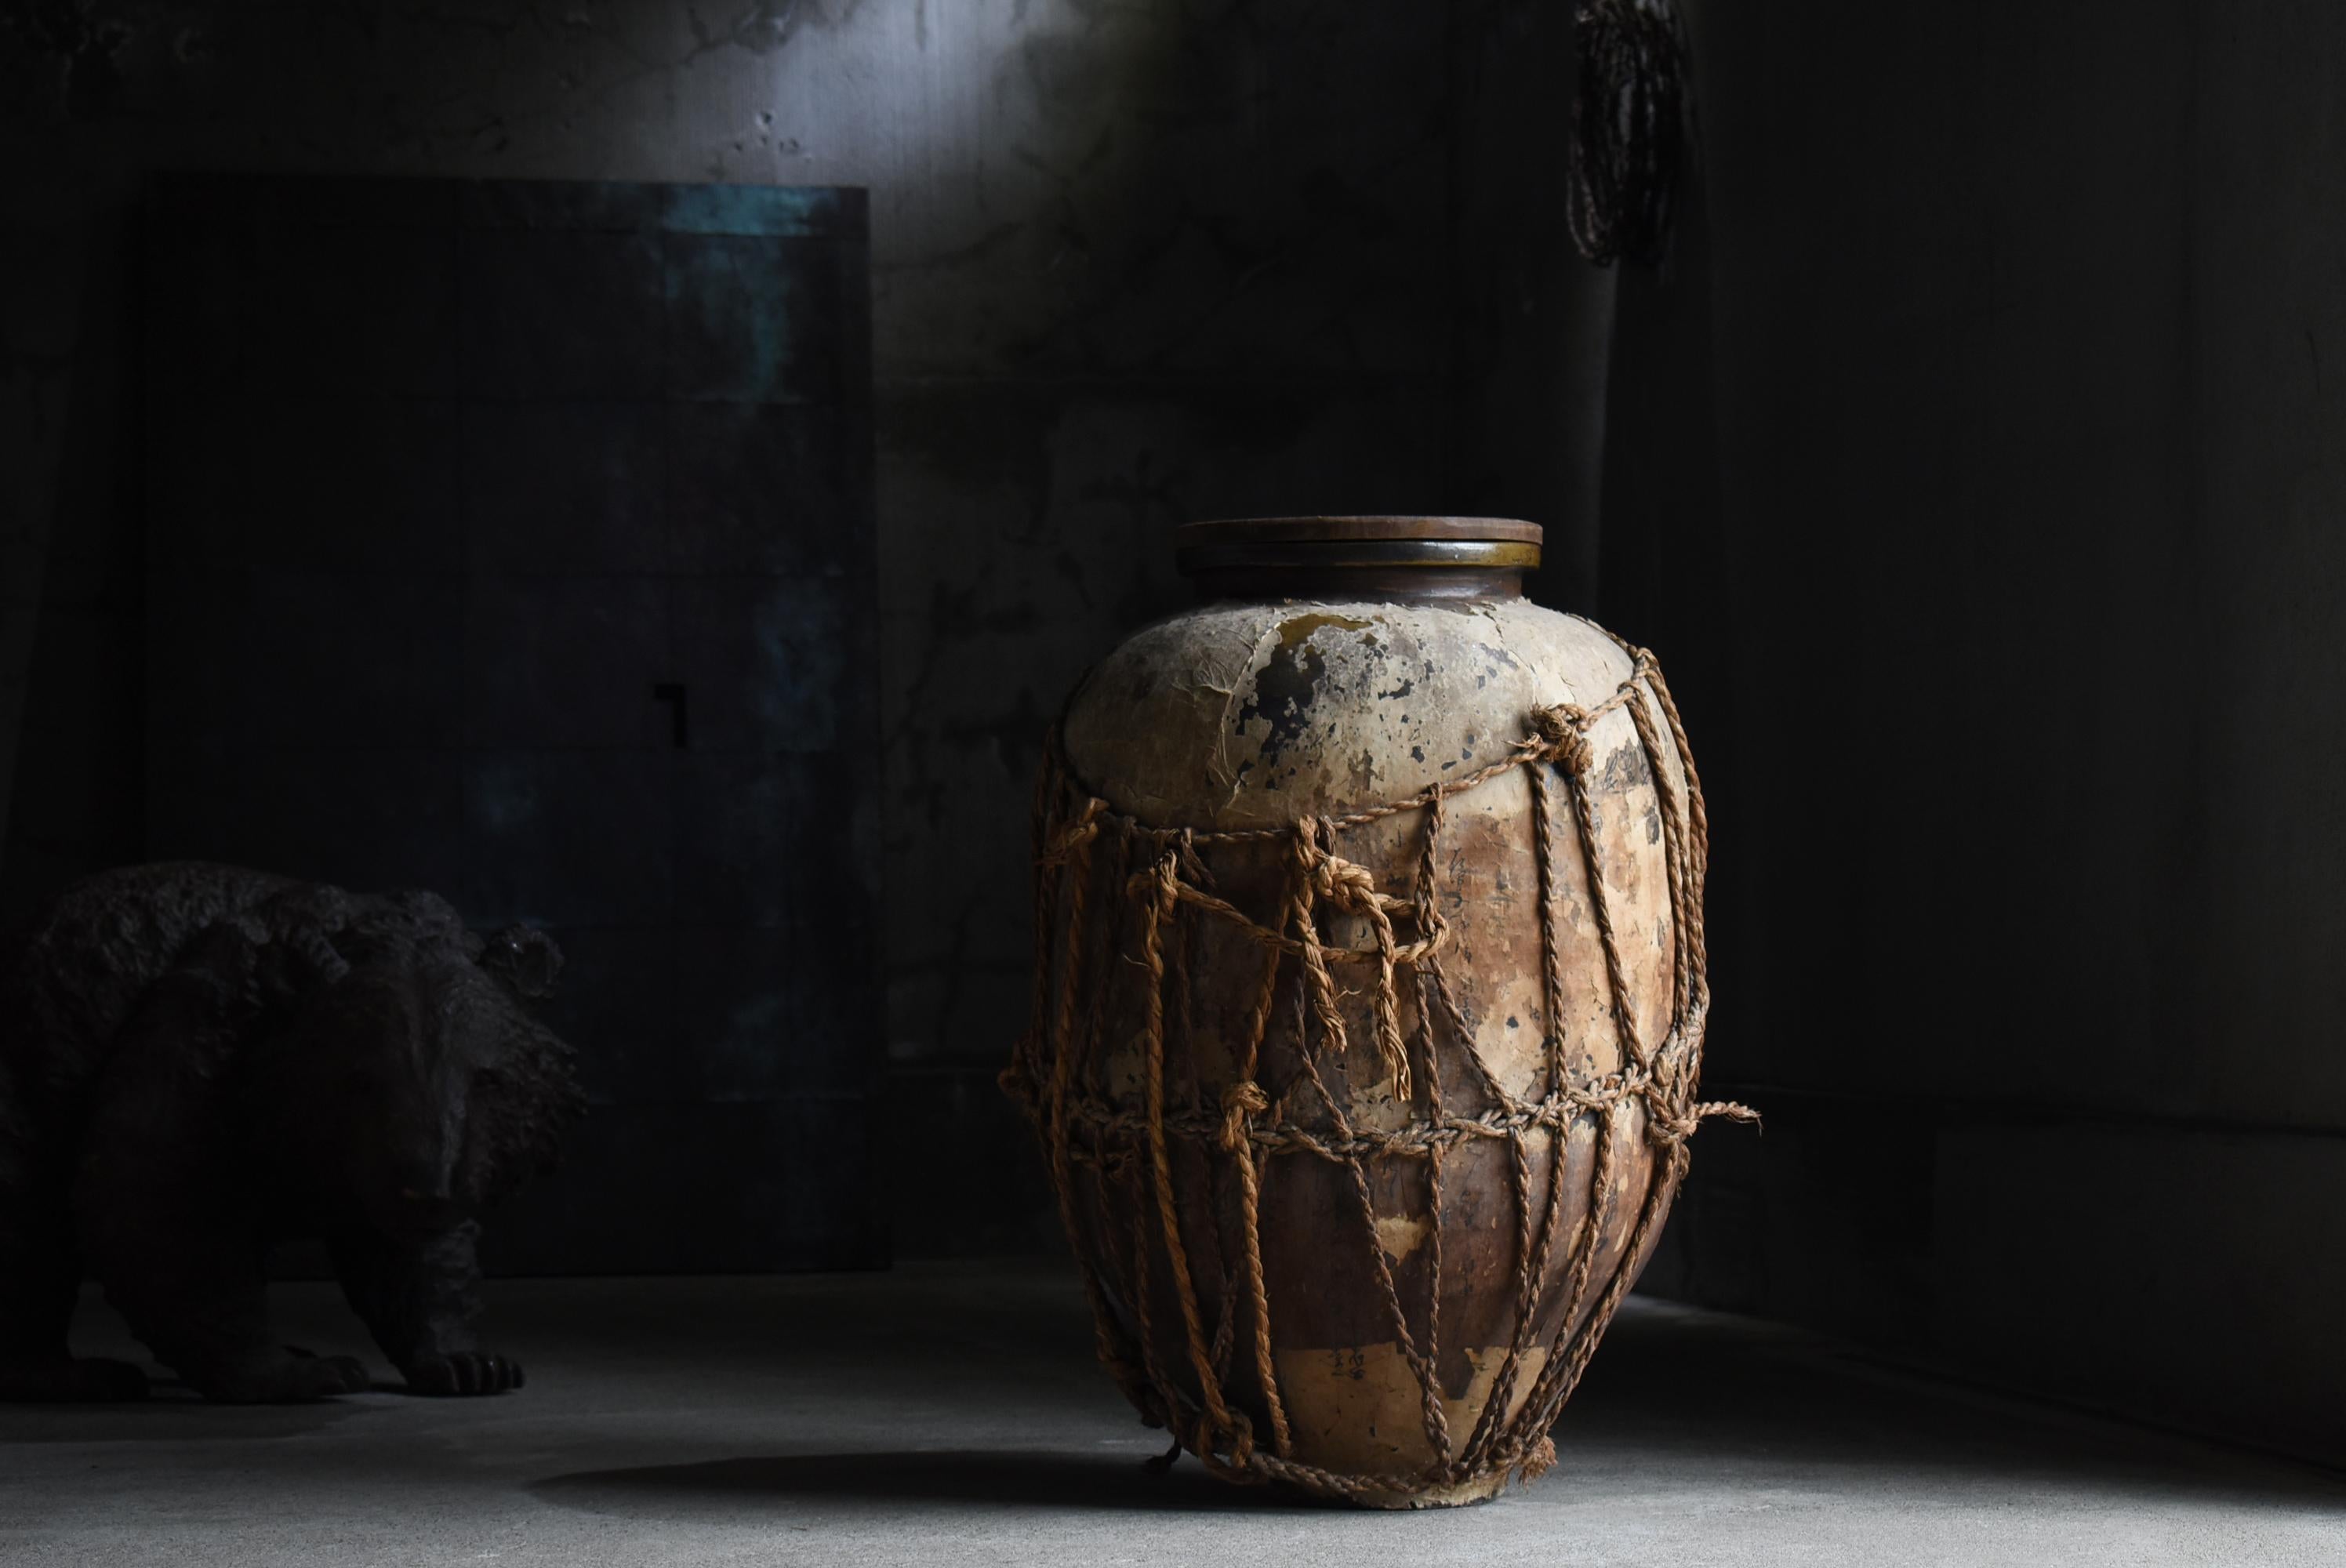 Japanese Antique Large Pottery Vase 1860s-1900s / Flower Vase Vessel Wabi Sabi 13